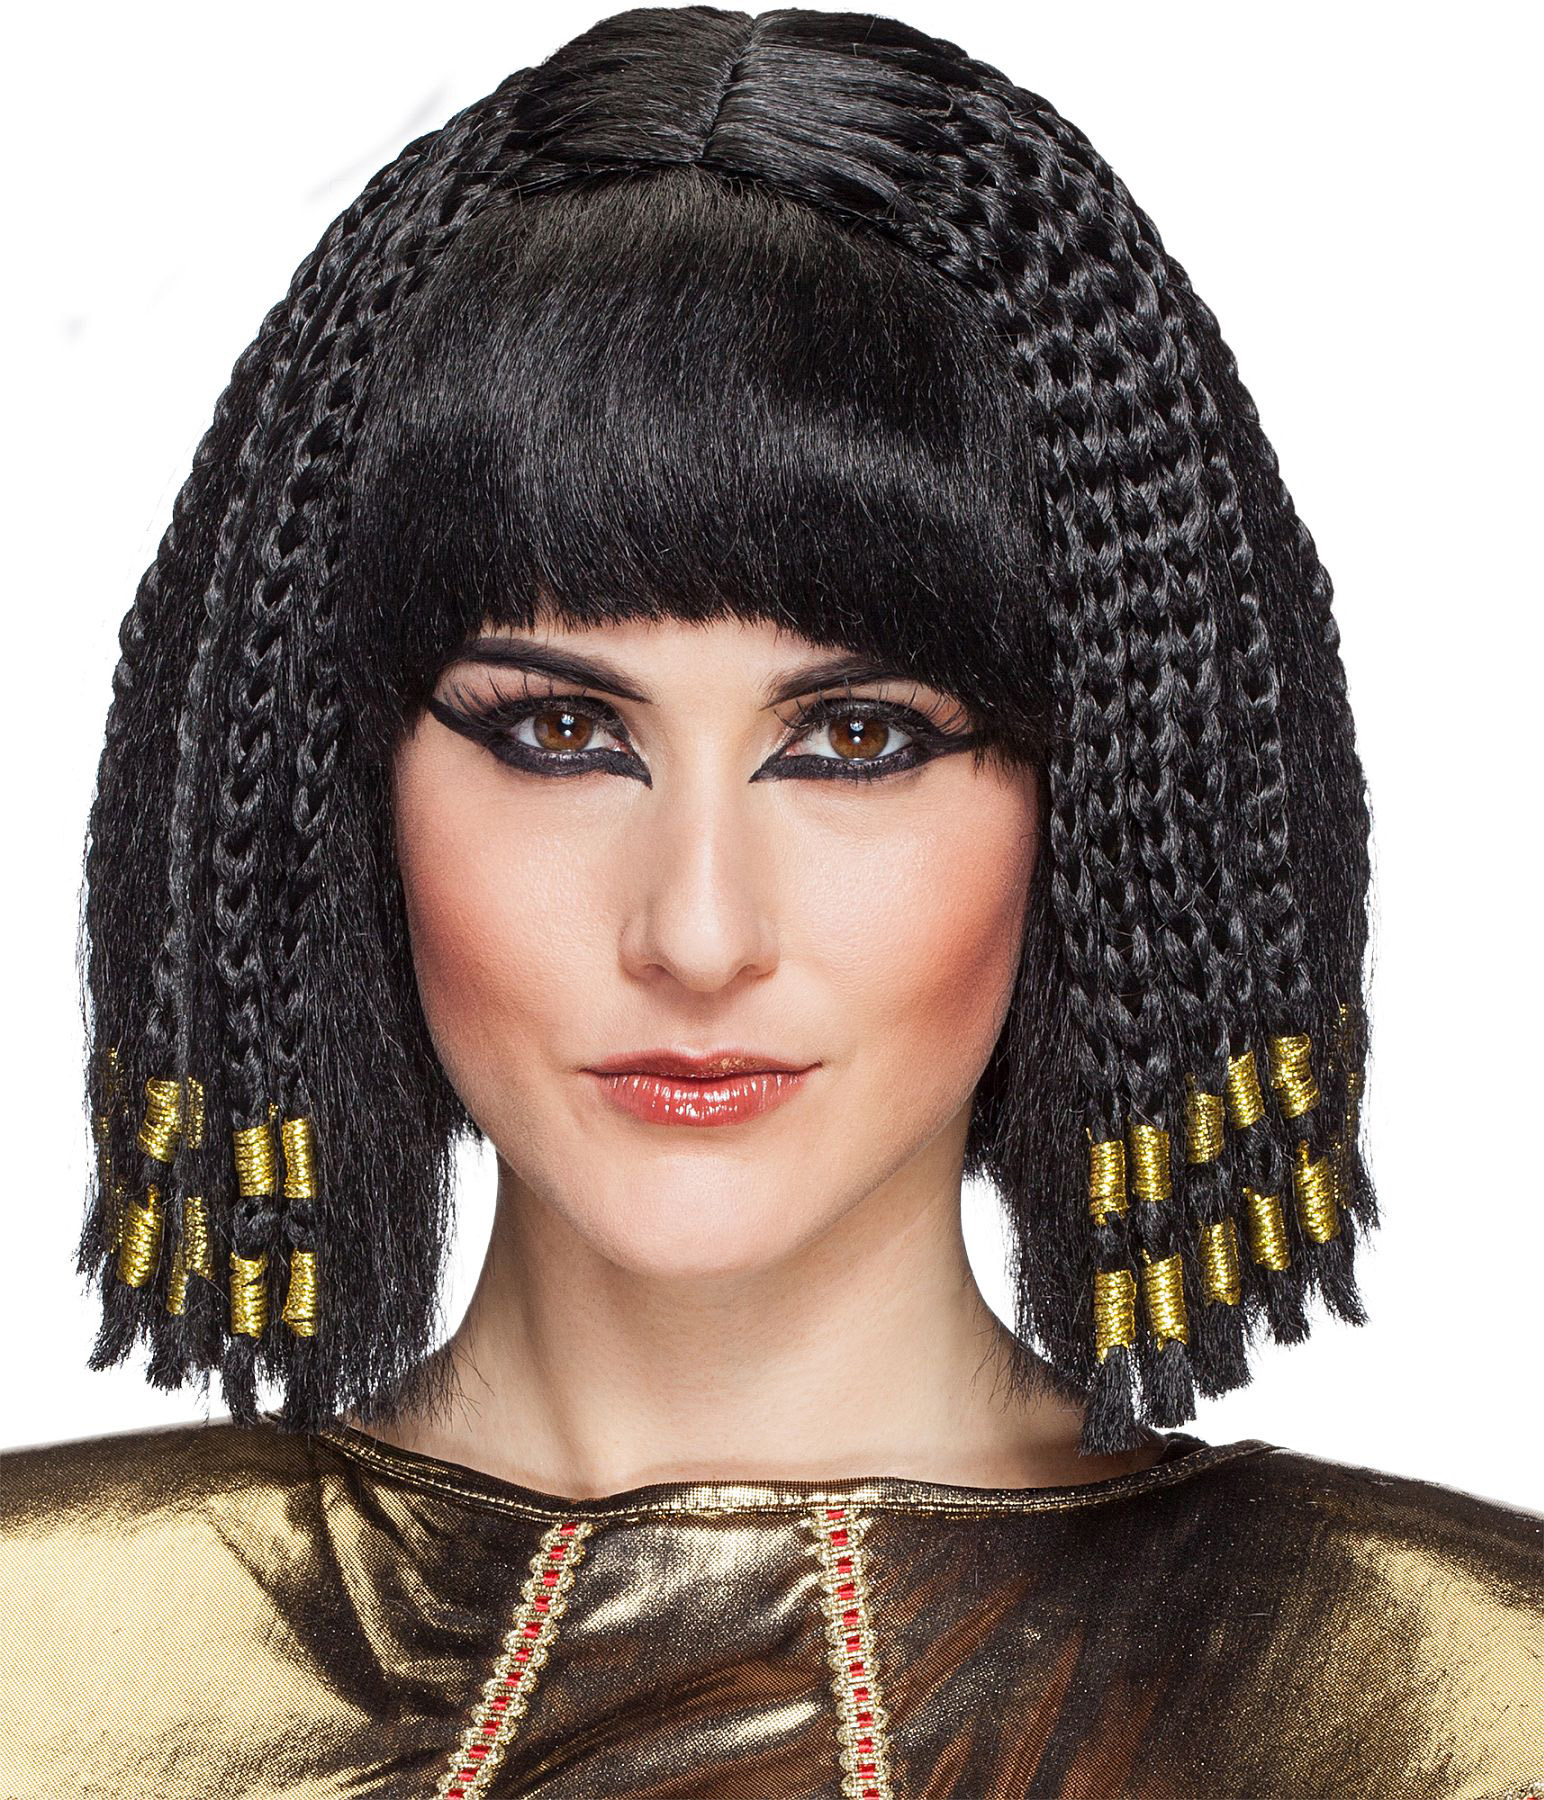 Ägyptische Königin mit geflochtenen Zöpfen